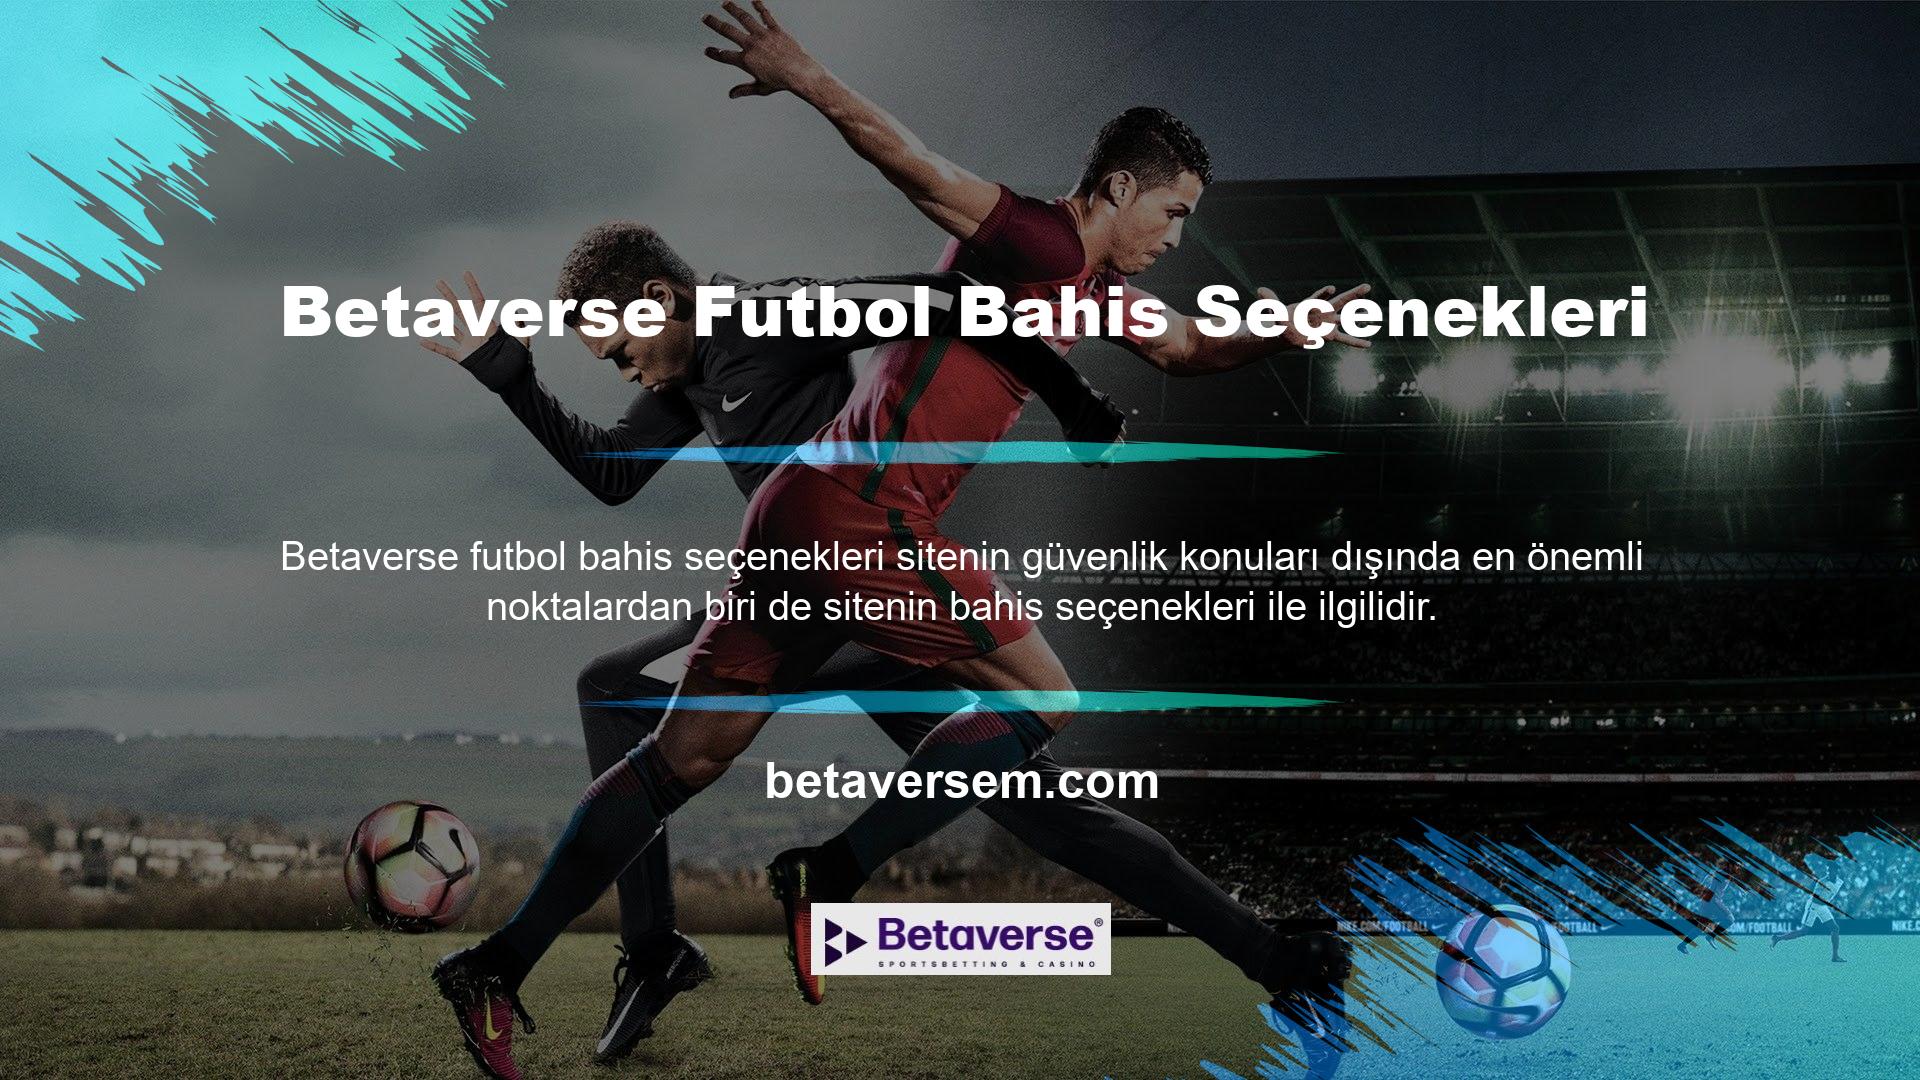 Betaverse web sitesi, aşağıdakiler gibi farklı futbol maçlarına bahis oynamanıza izin verir: B